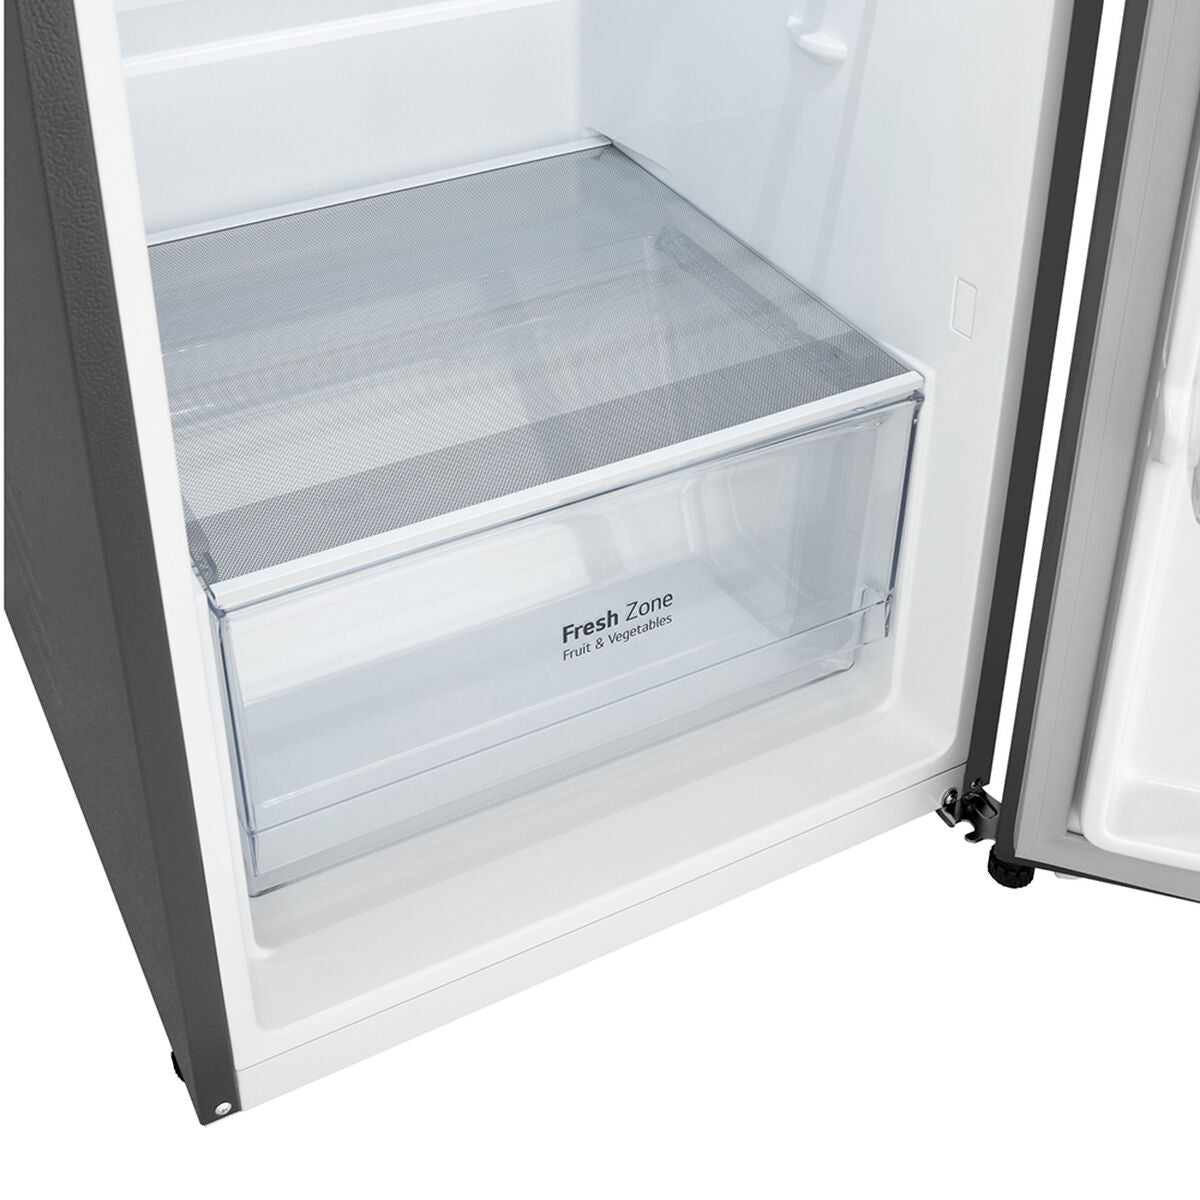 Refrigerador Lg Vt27Bpp Gris 204 Lts [Openbox][wall]